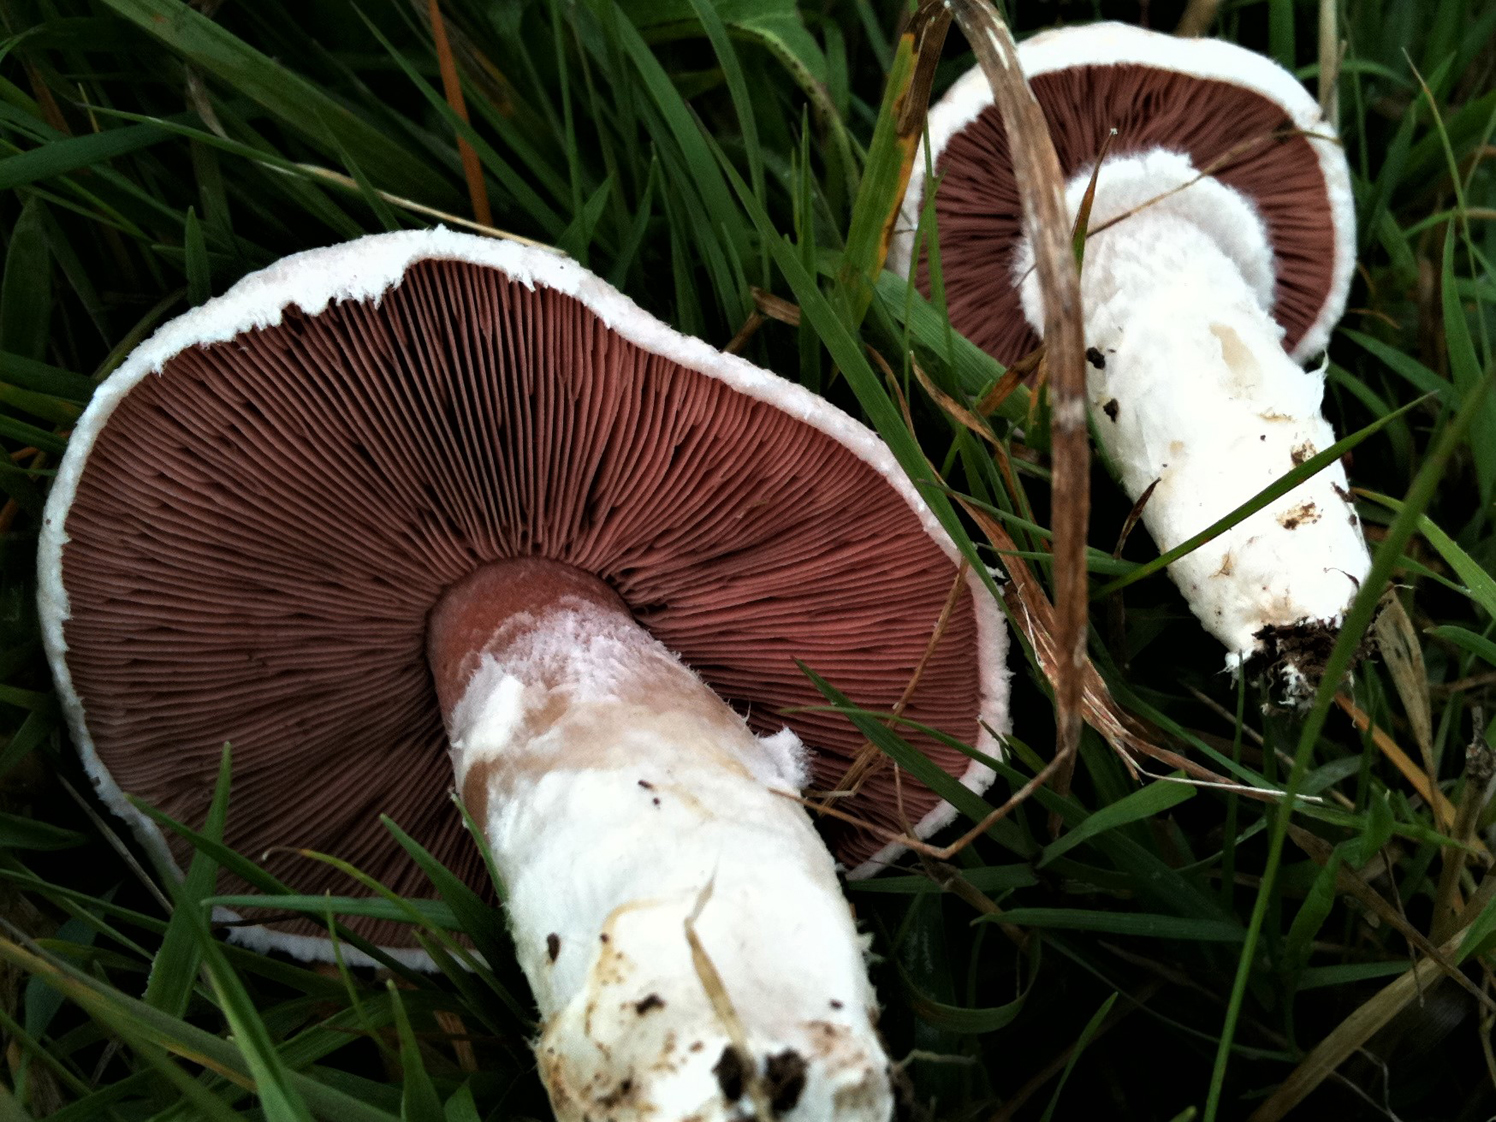 field trip mushrooms